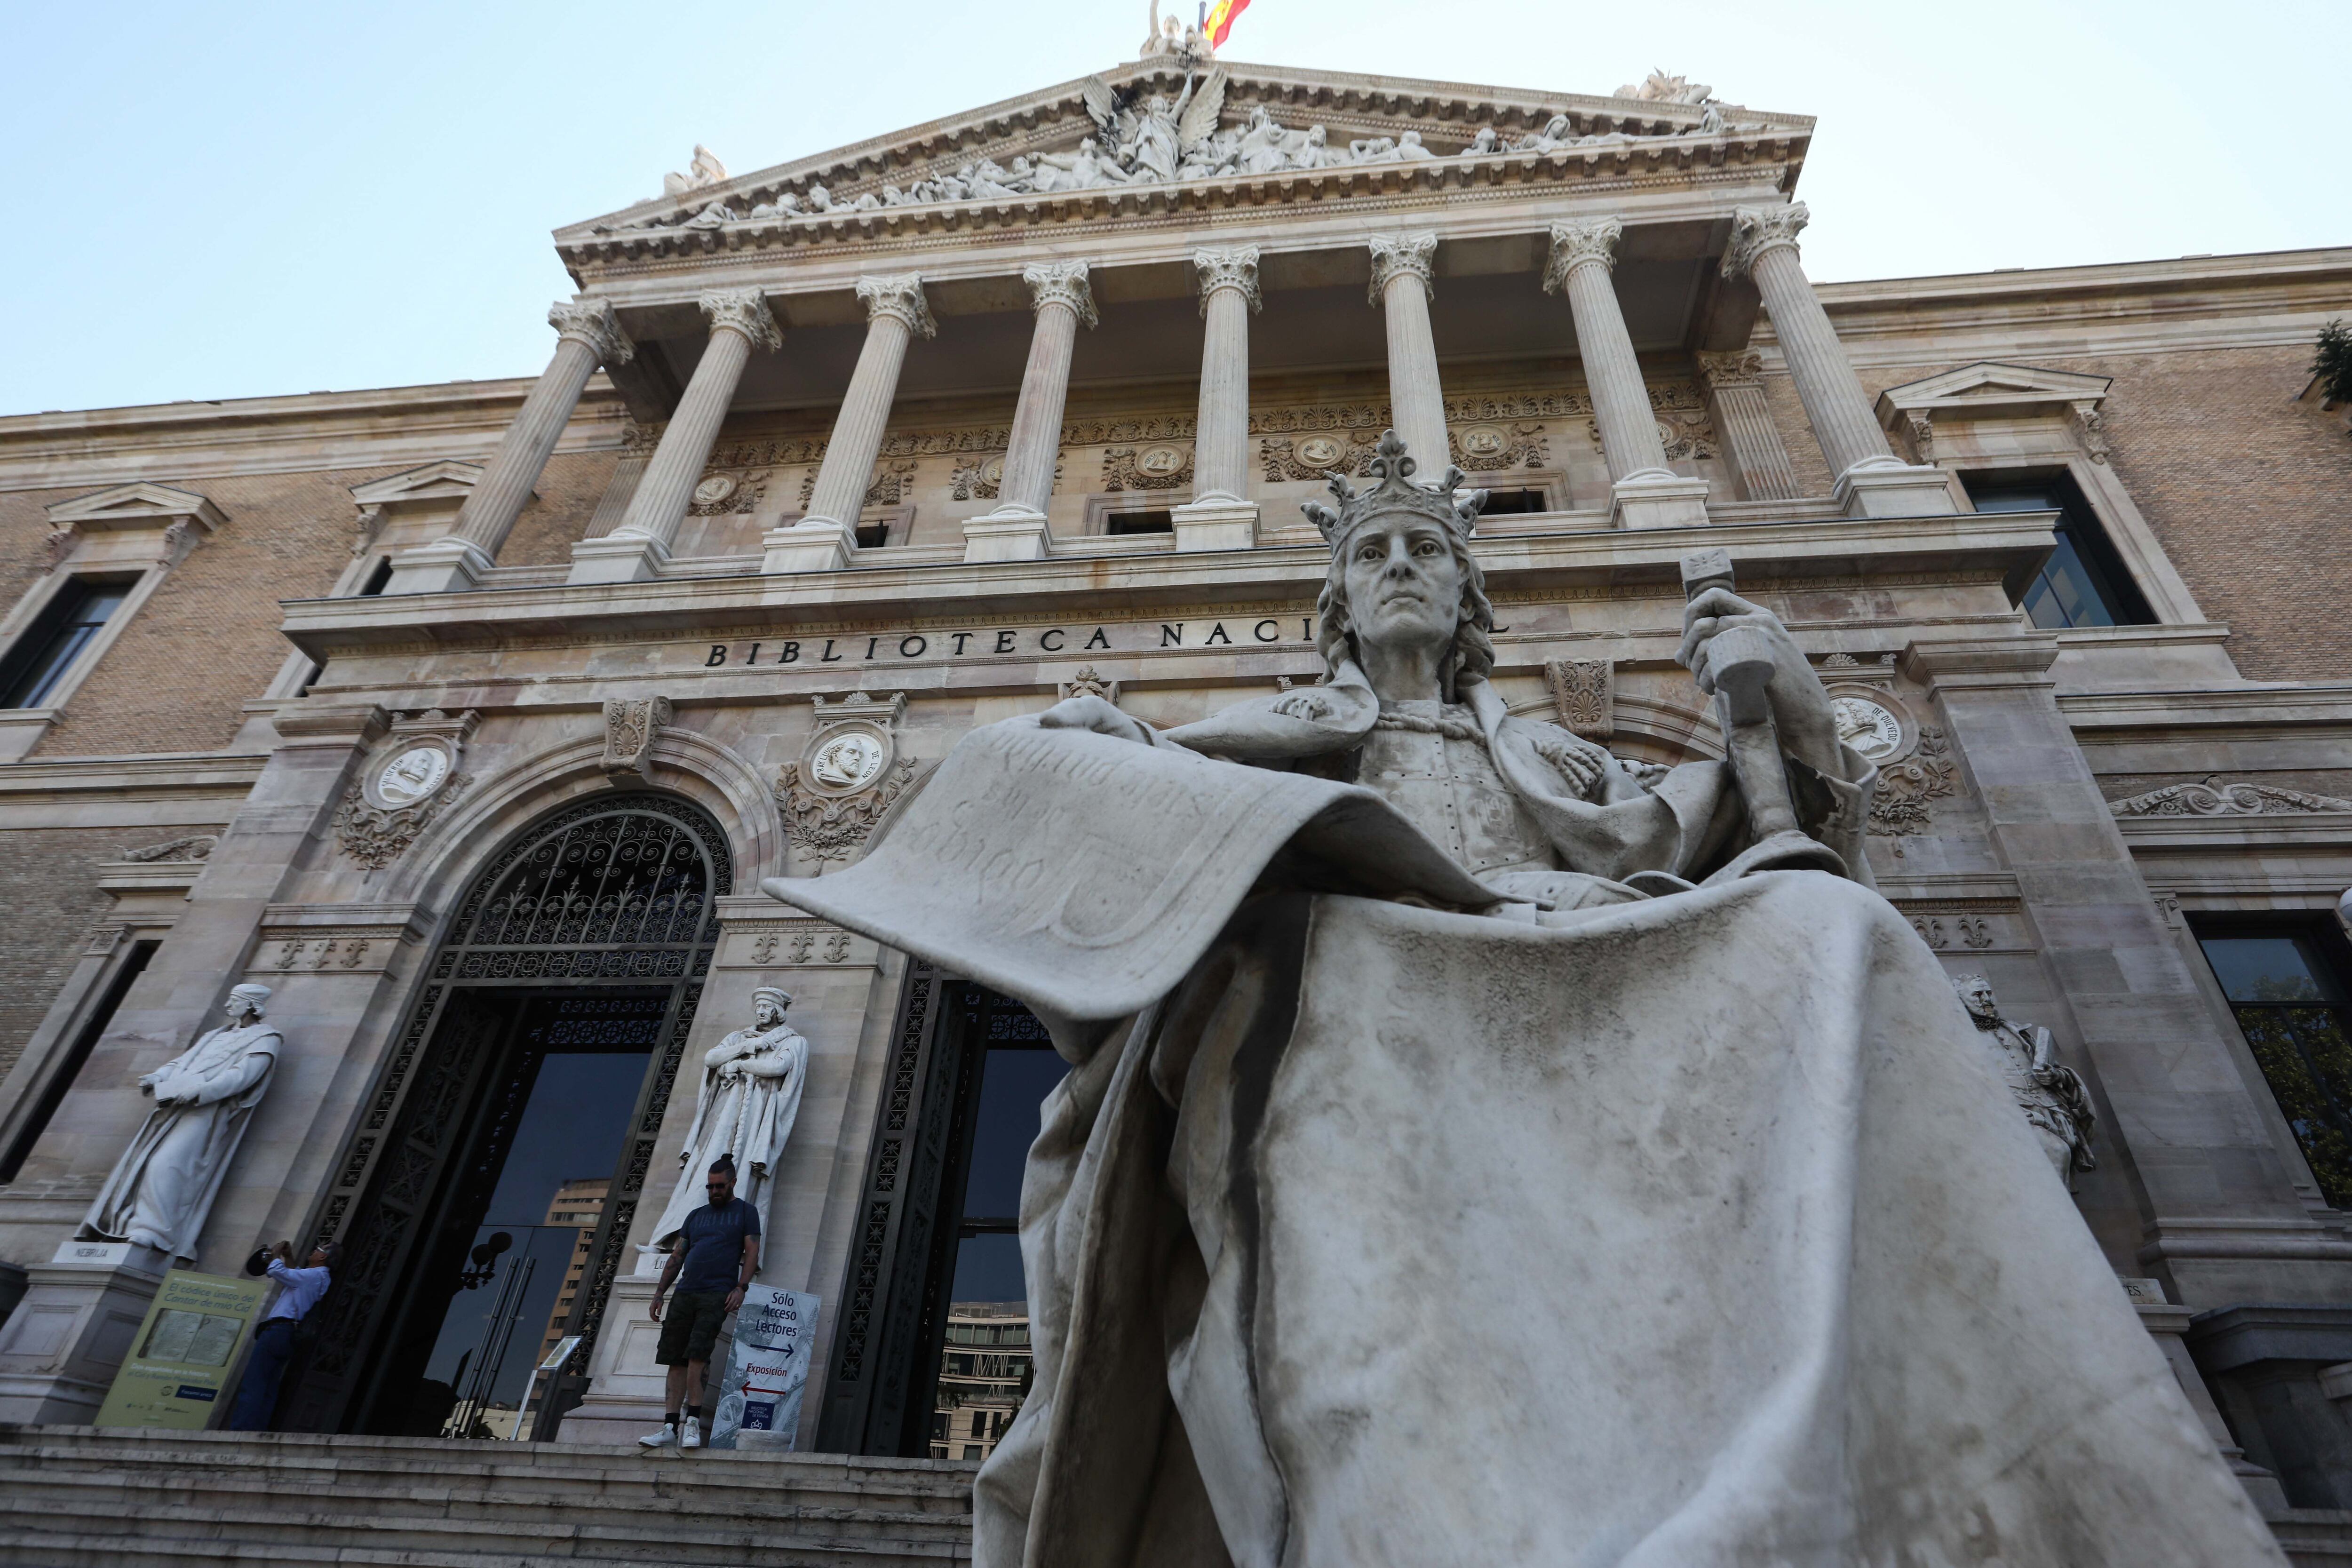 Estatua de Alfonso X el Sabio en la escalinata de la Biblioteca Nacional, obra de José Alcoverro.